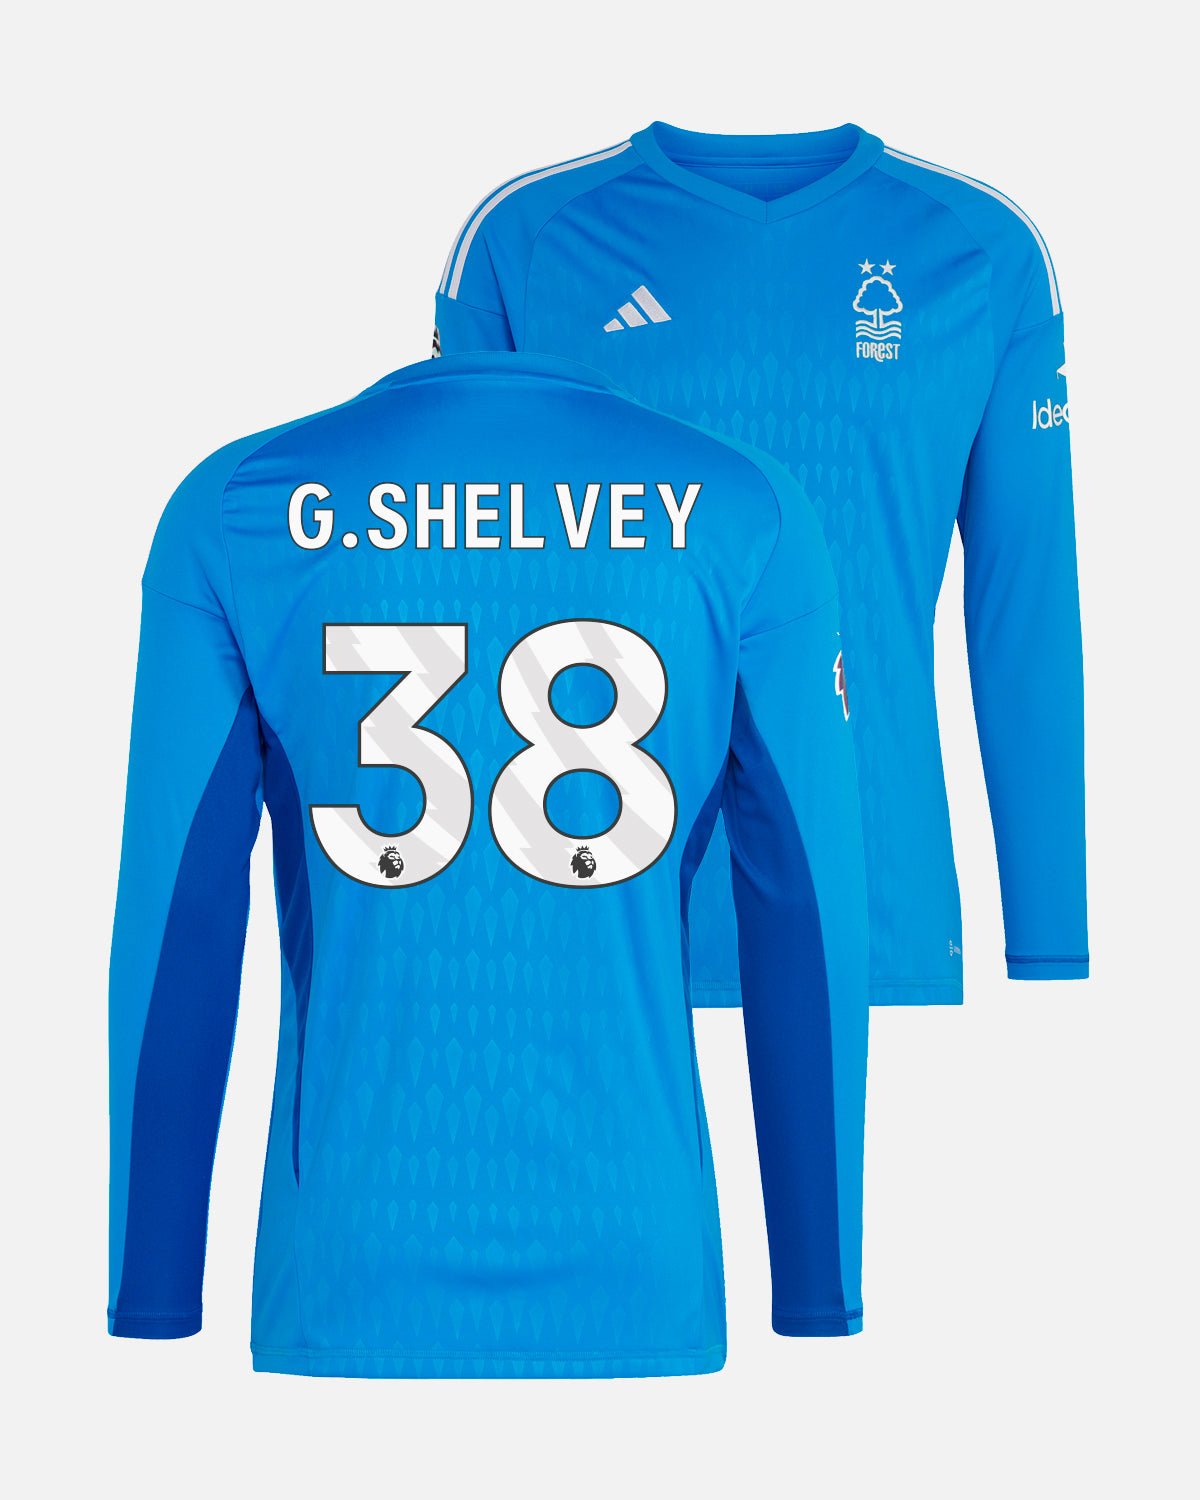 NFFC Junior Blue Goalkeeper Shirt 23-24 - G. Shelvey 38 - Nottingham Forest FC